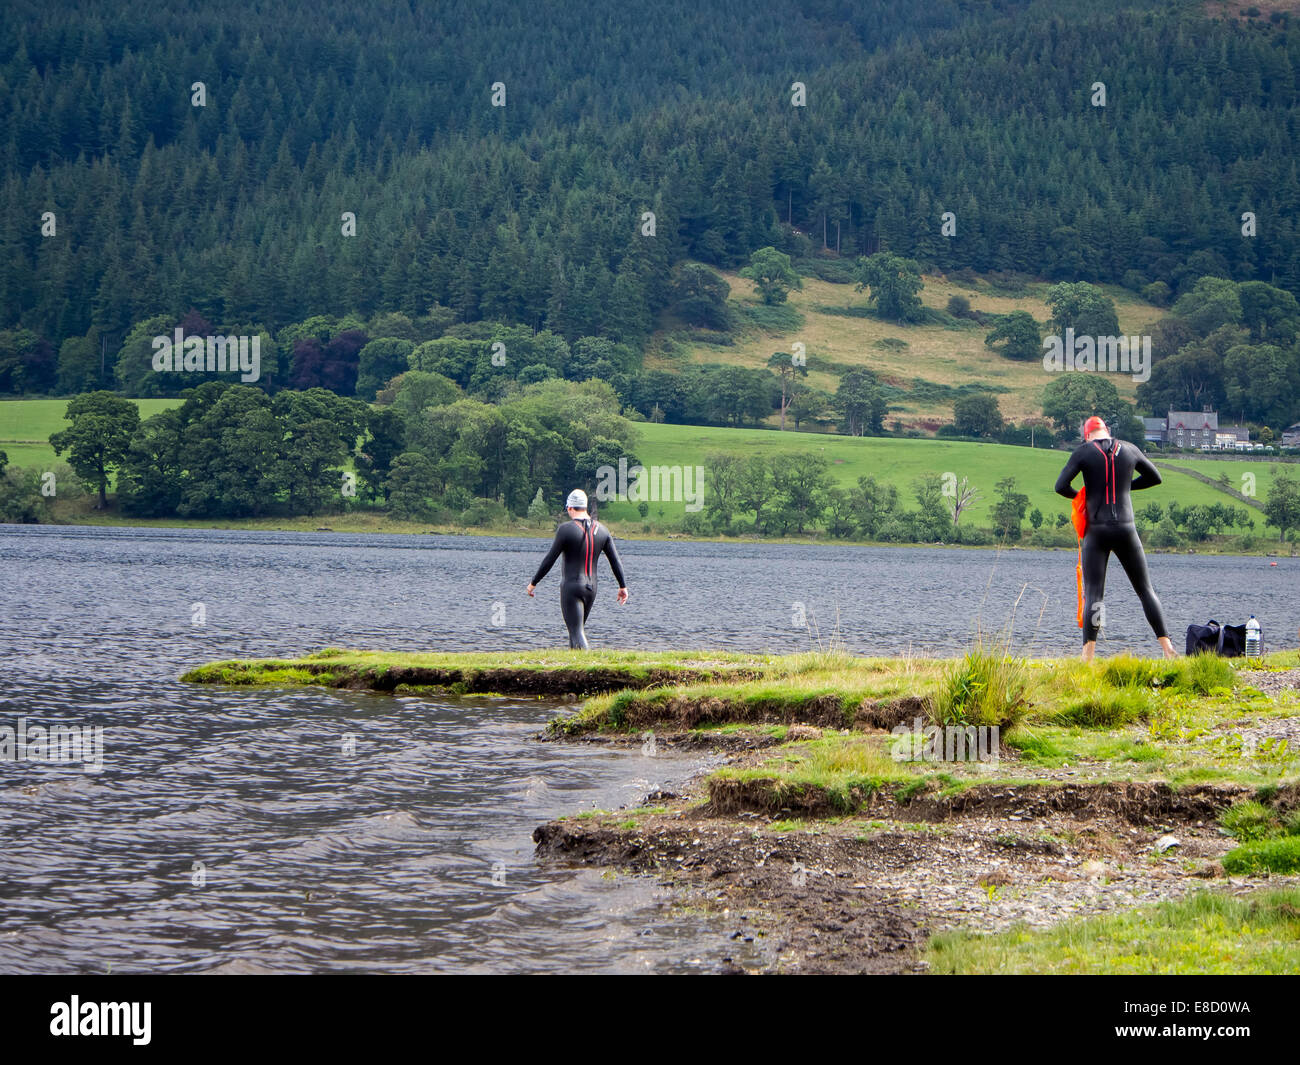 Los nadadores de aguas abiertas de prepararse para ingresar a las aguas de Bassenthwaite Lake en el Lake District, Cumbria, Inglaterra Foto de stock